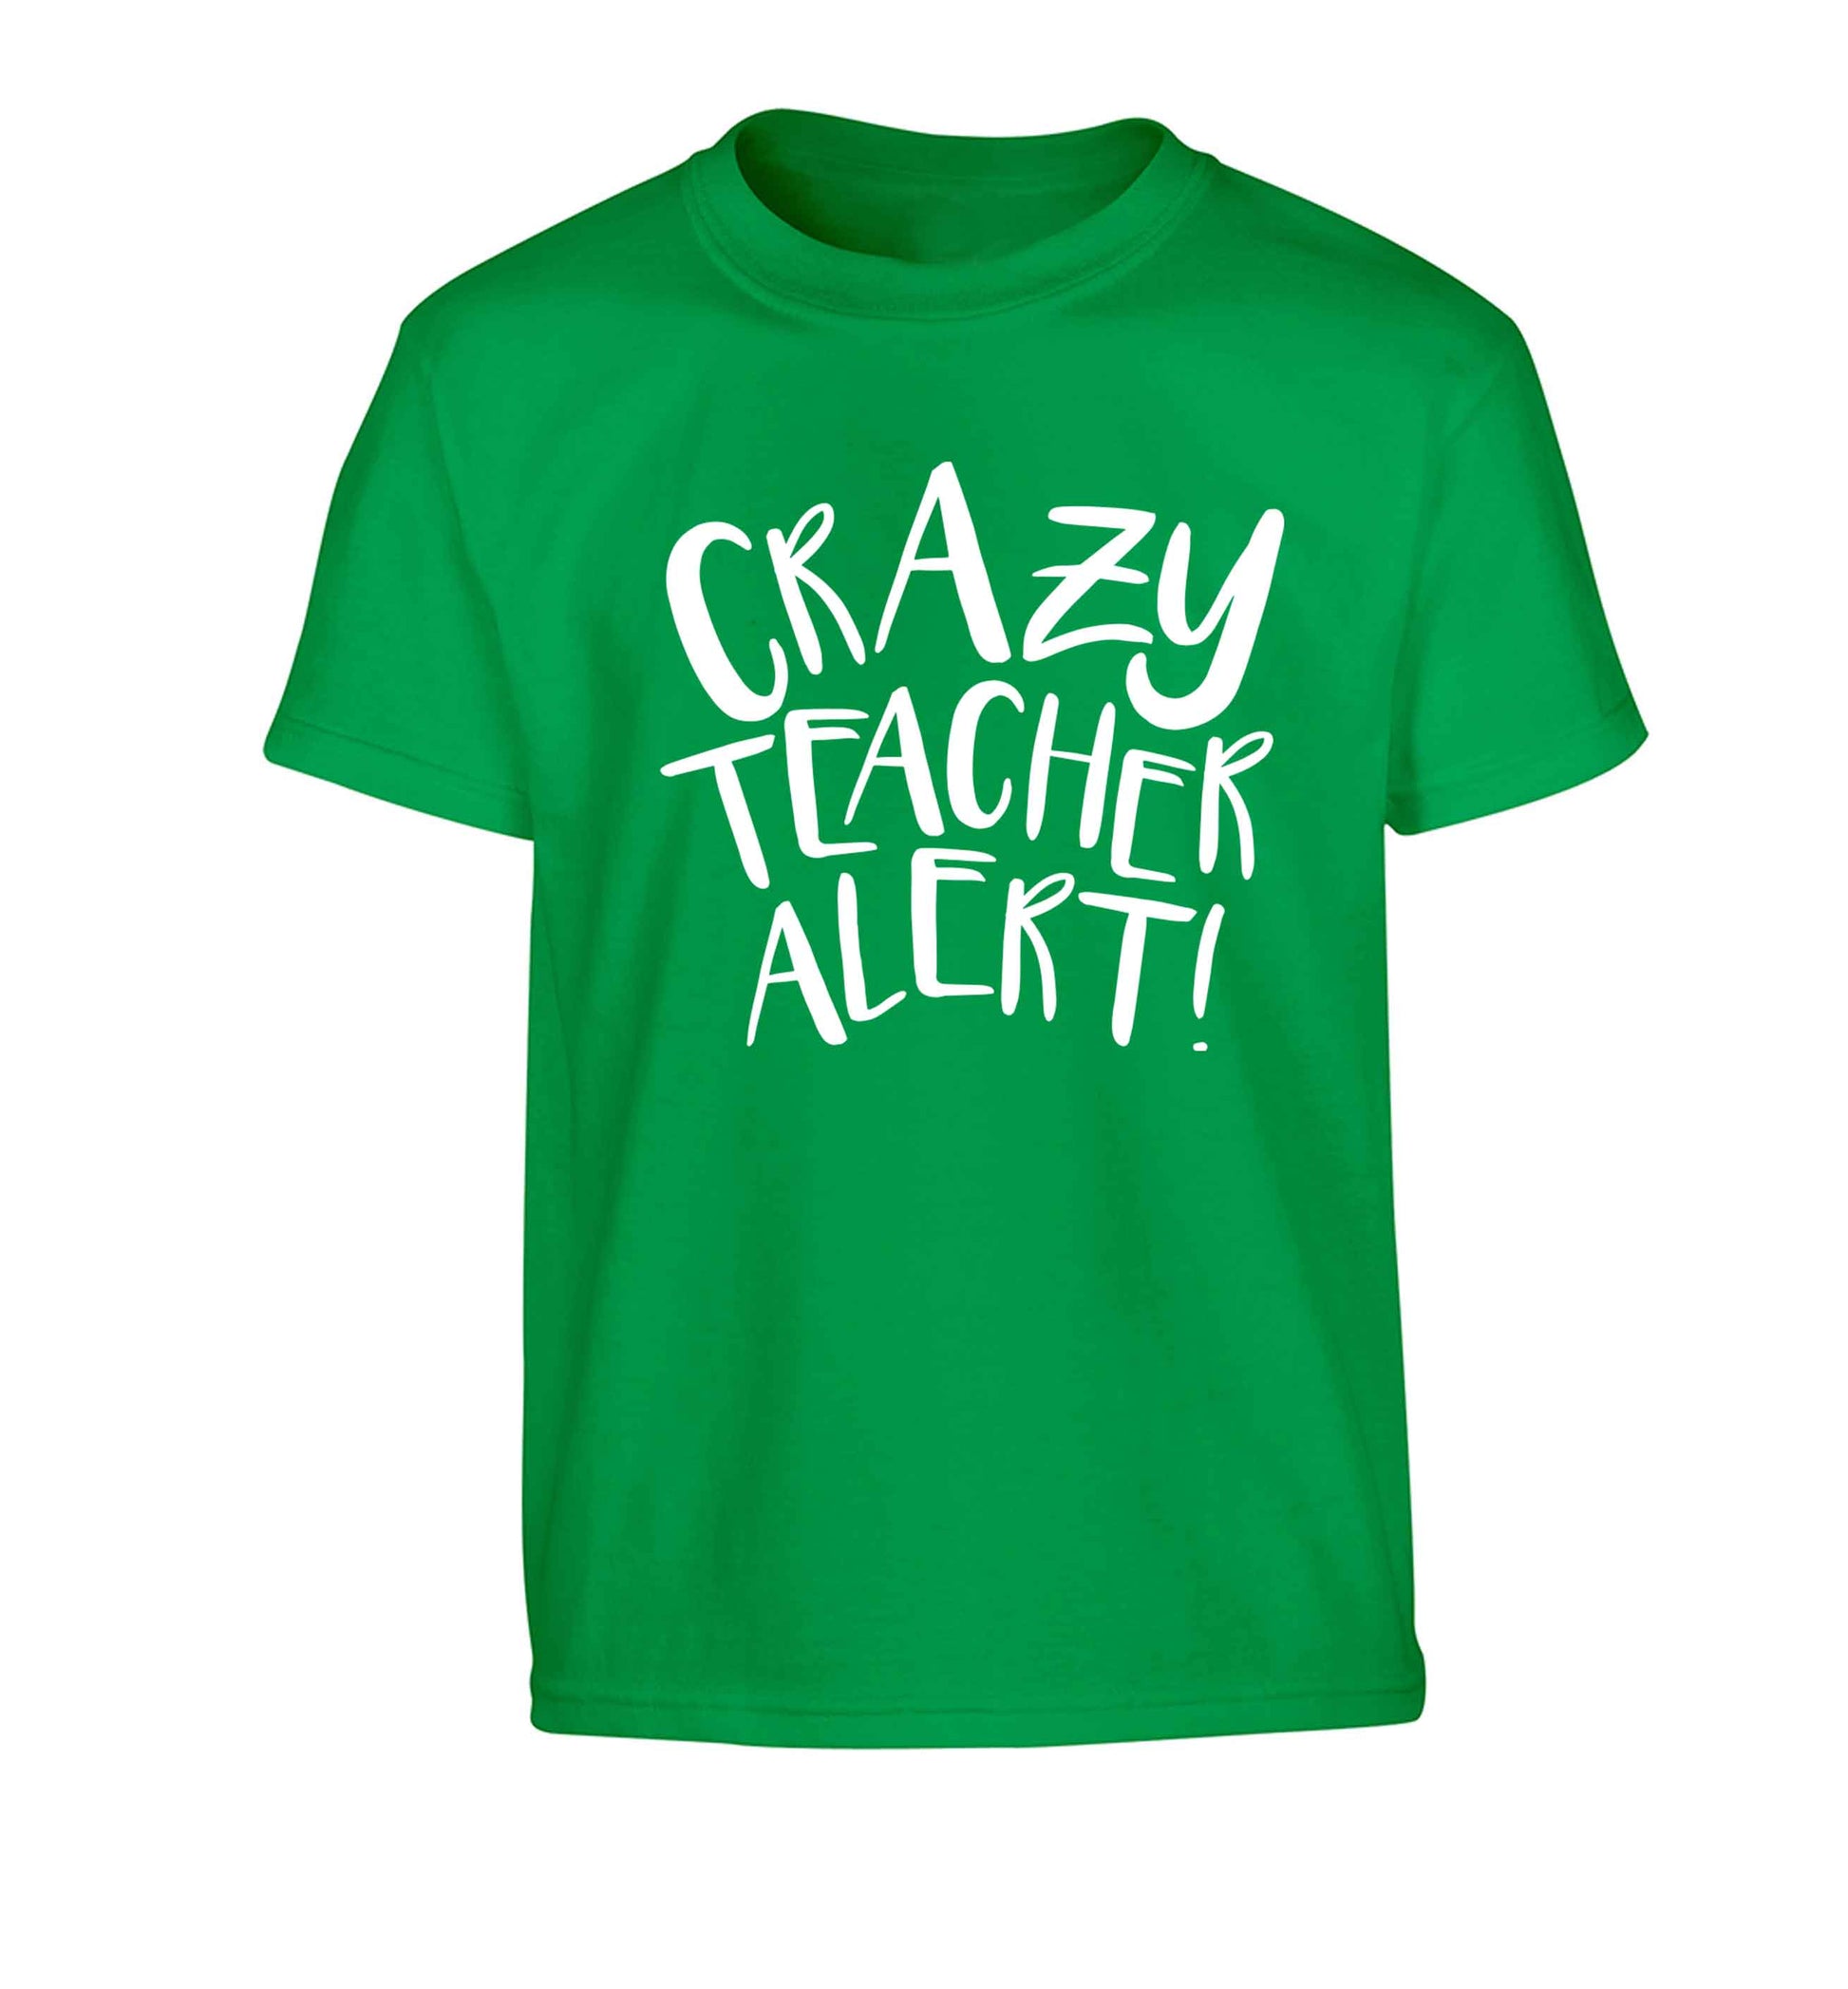 Crazy teacher alert Children's green Tshirt 12-13 Years